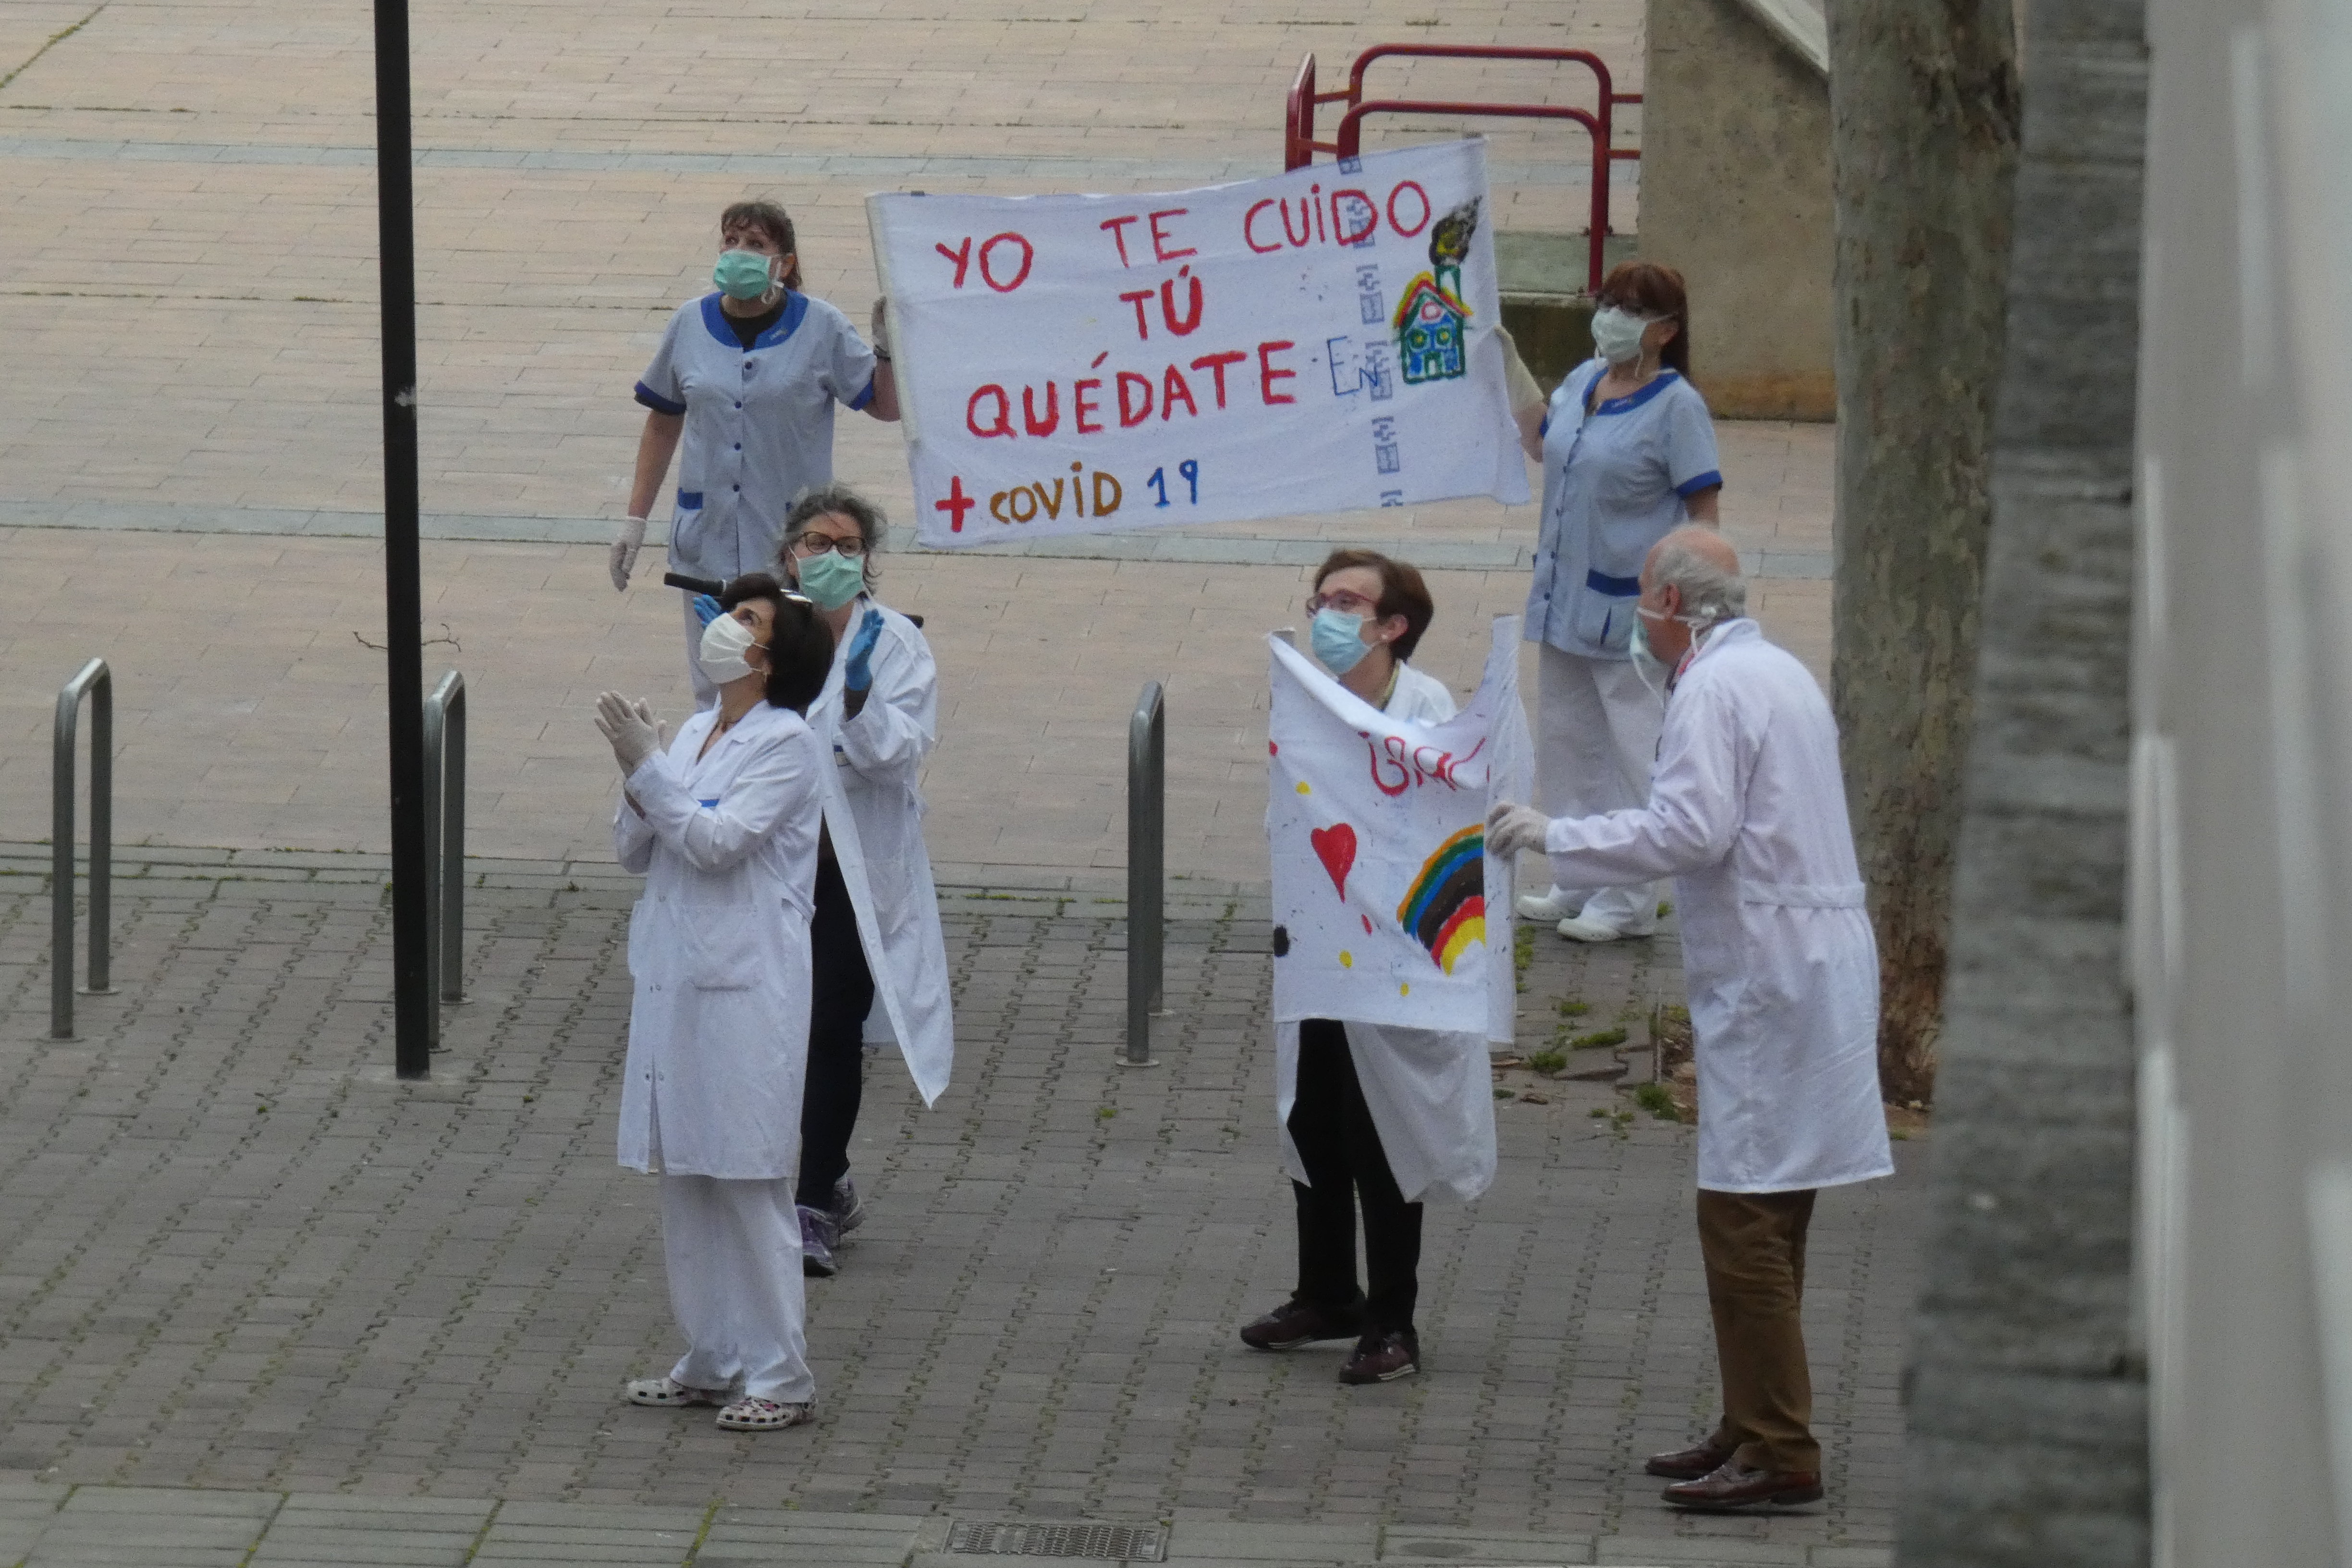 Sanitarios en la calle animando con un cartel que dice "Yo te cuido, tú quédate"